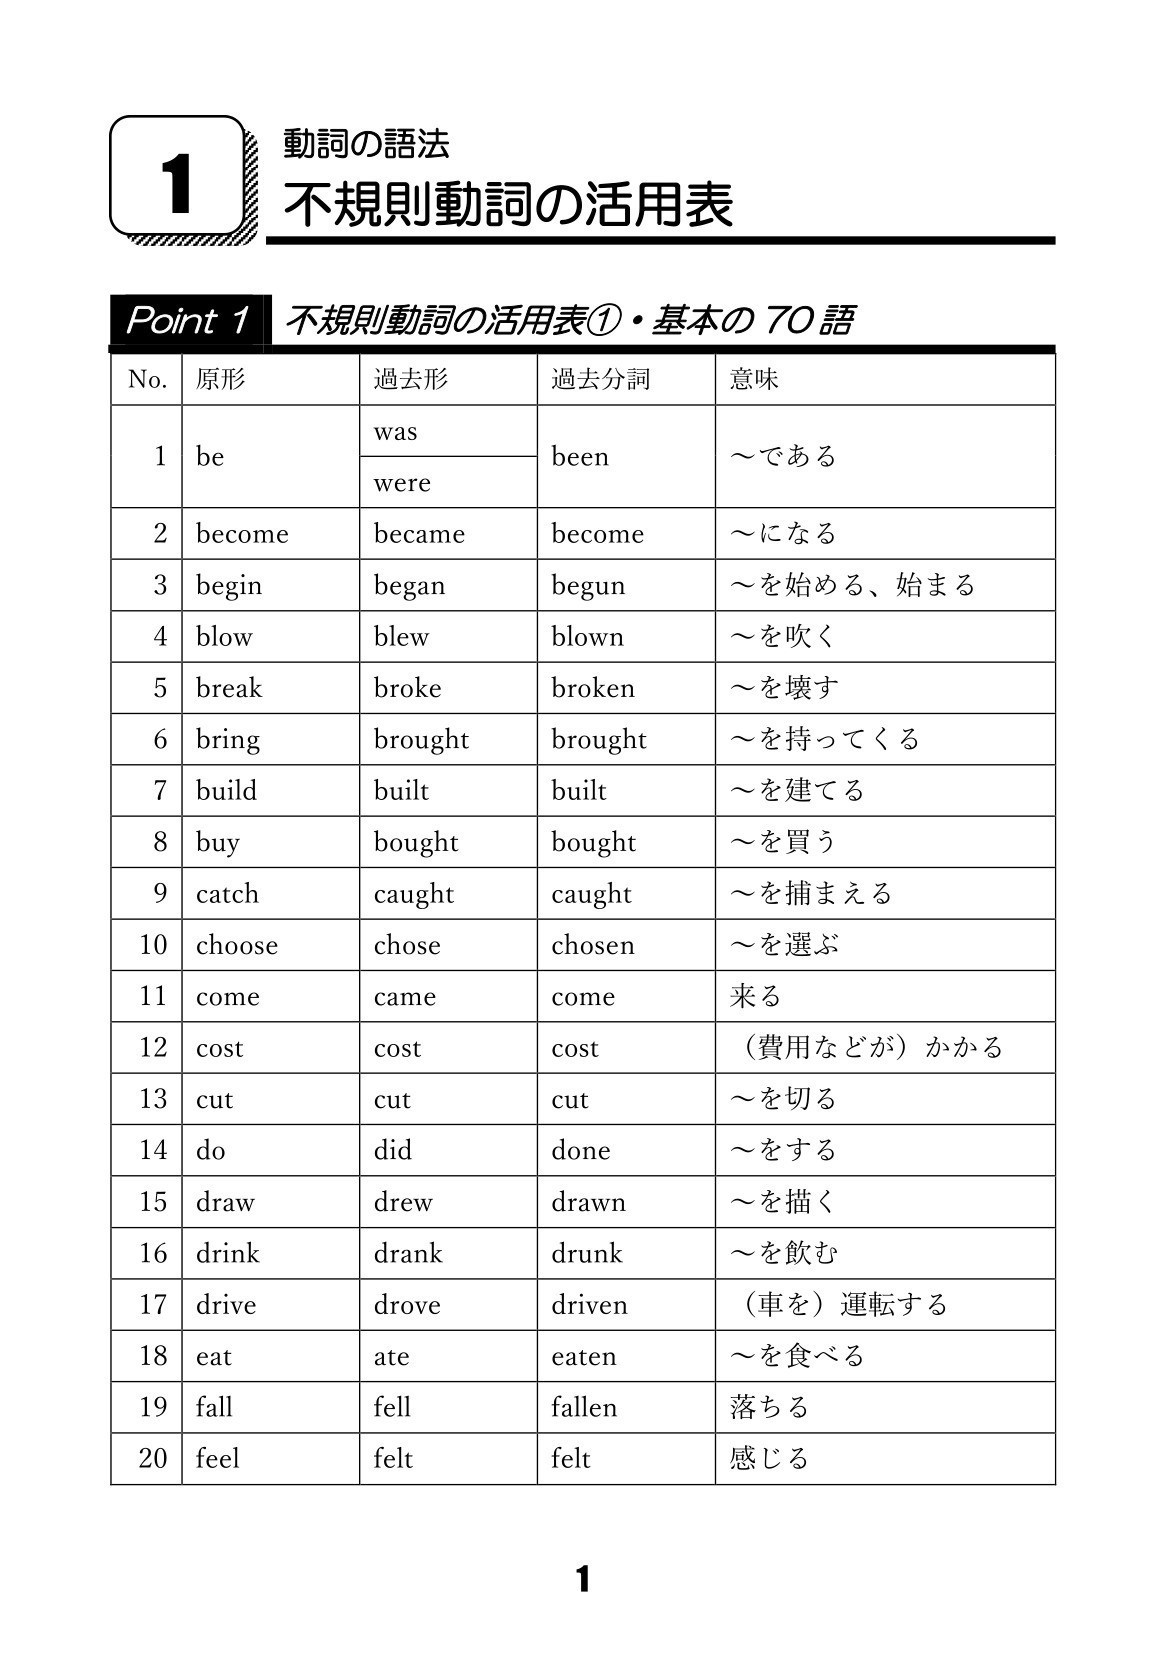 繁體 史上最強常用日語單字詞尾變化大全 從孩童到銀髮族都能一次弄懂